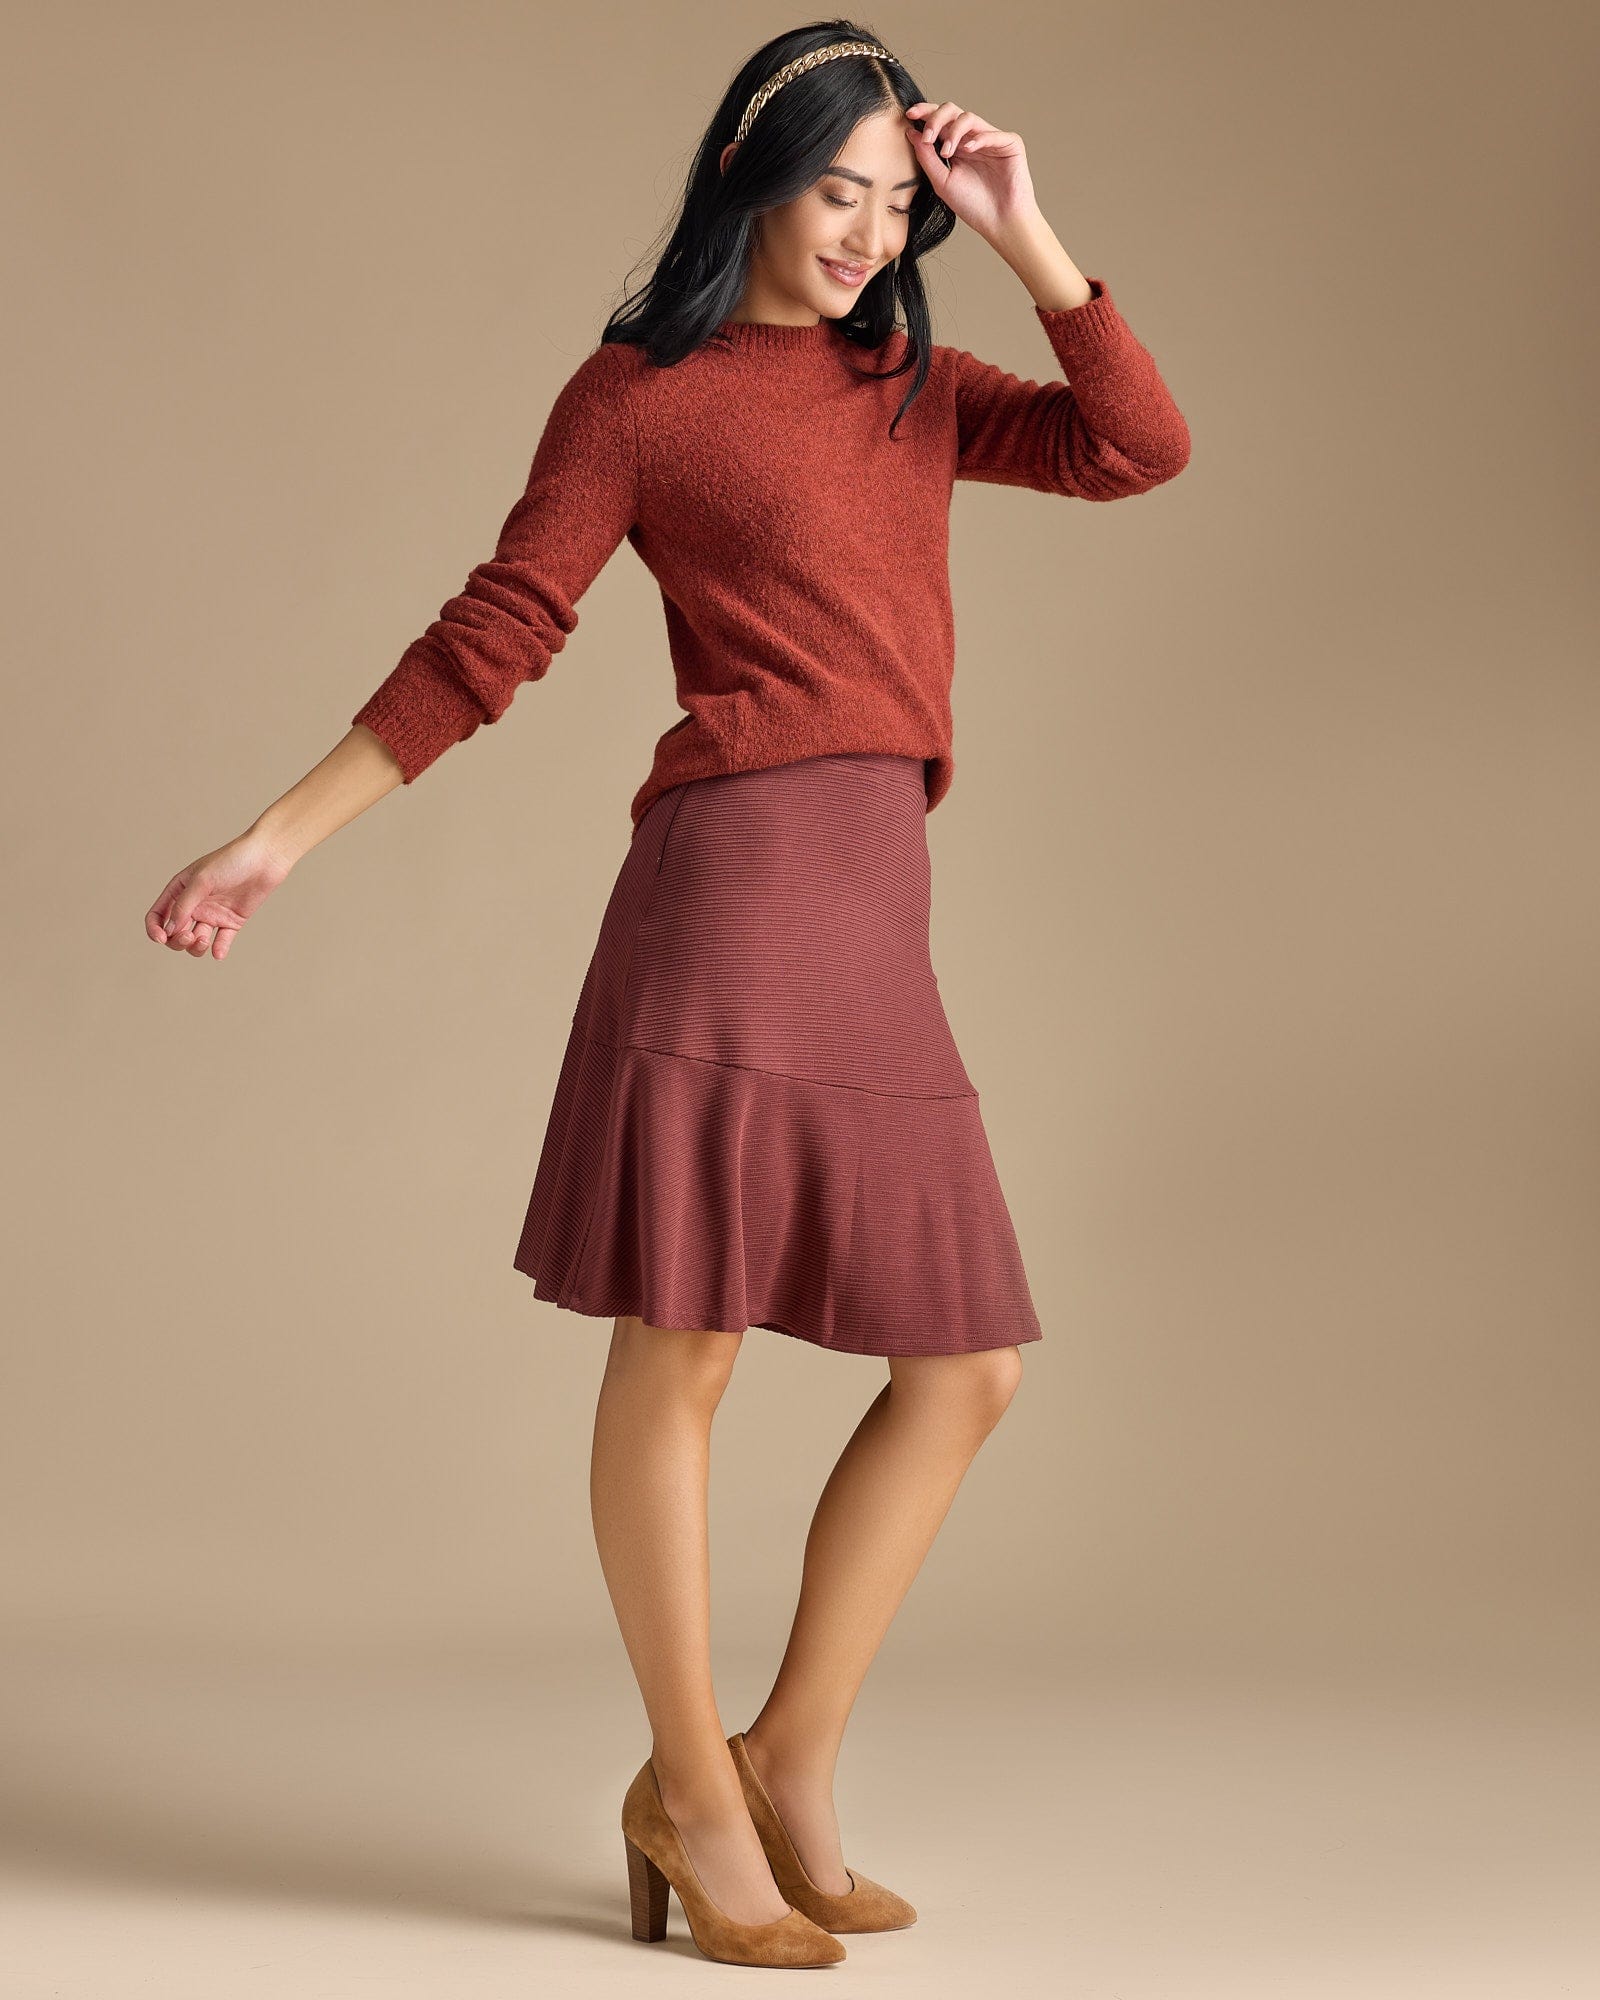 Woman in a knee-length flounce skirt